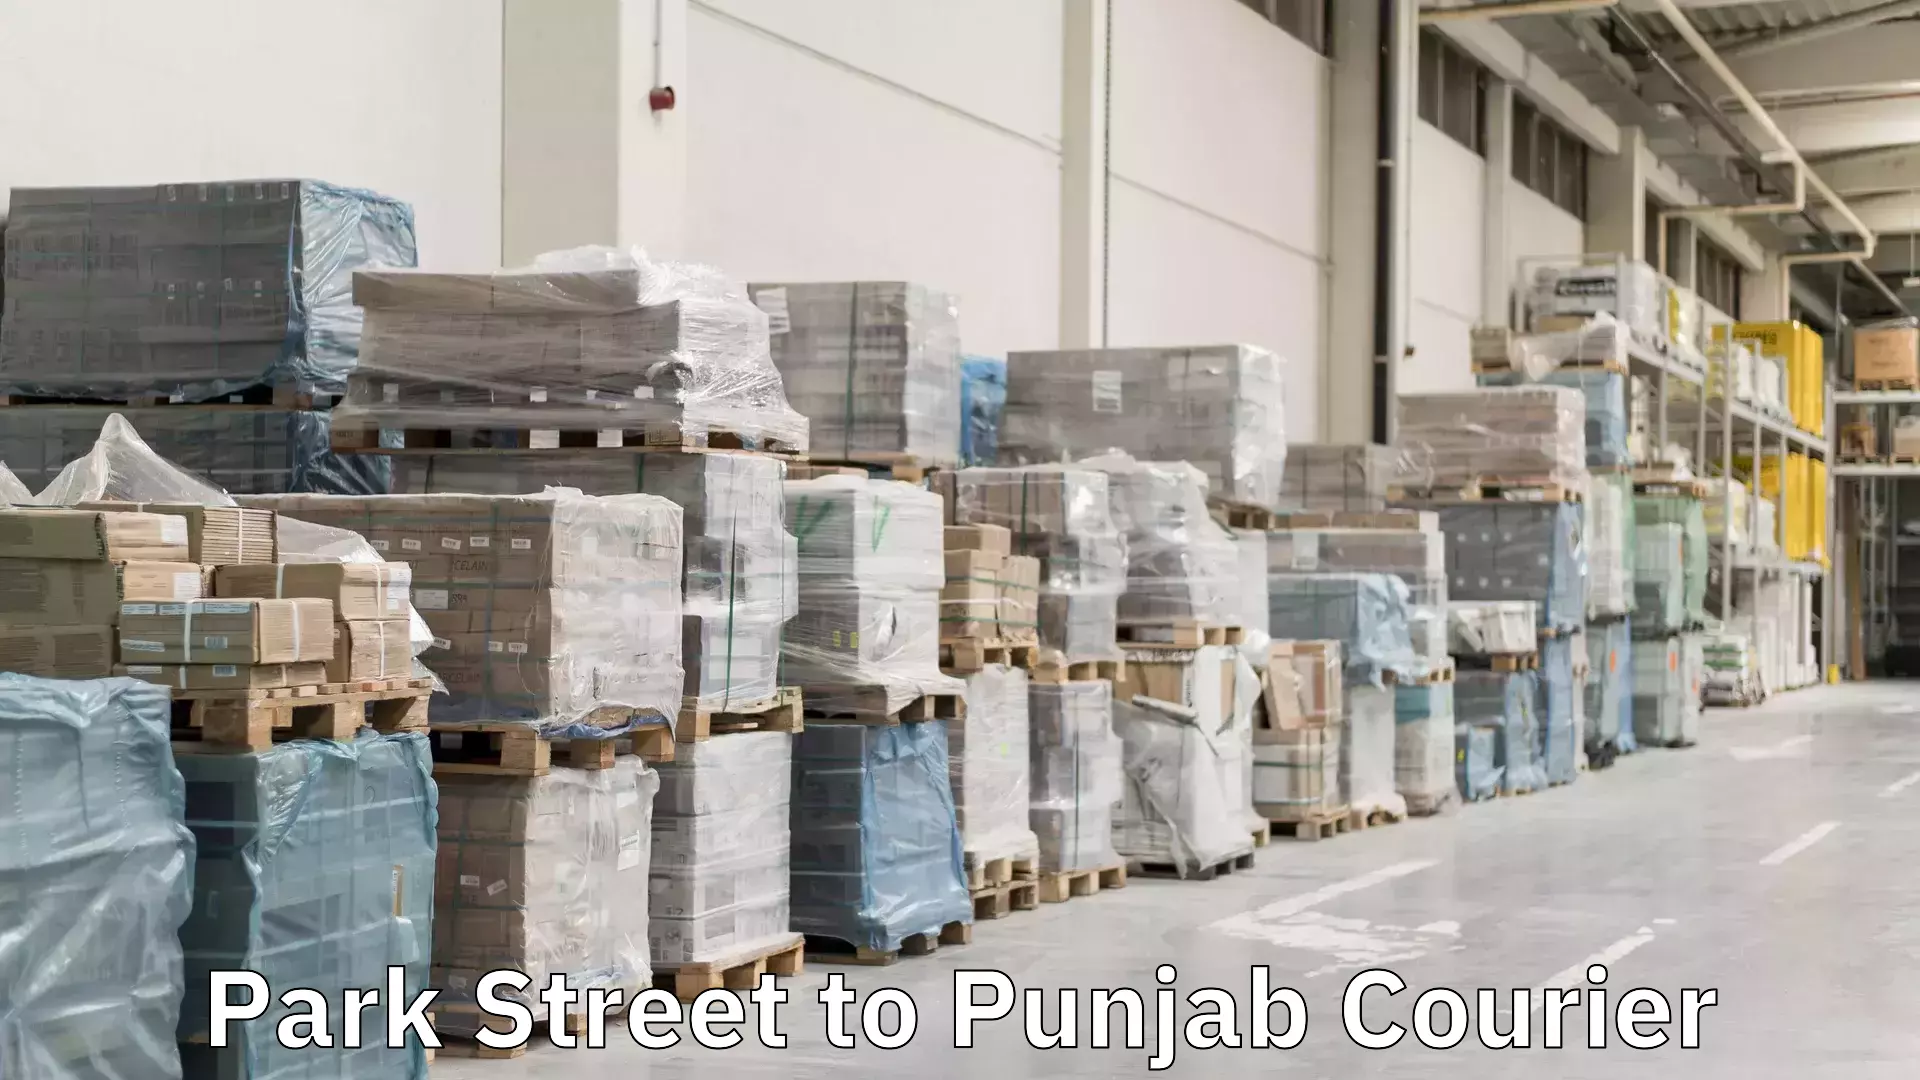 Reliable parcel services Park Street to Punjab